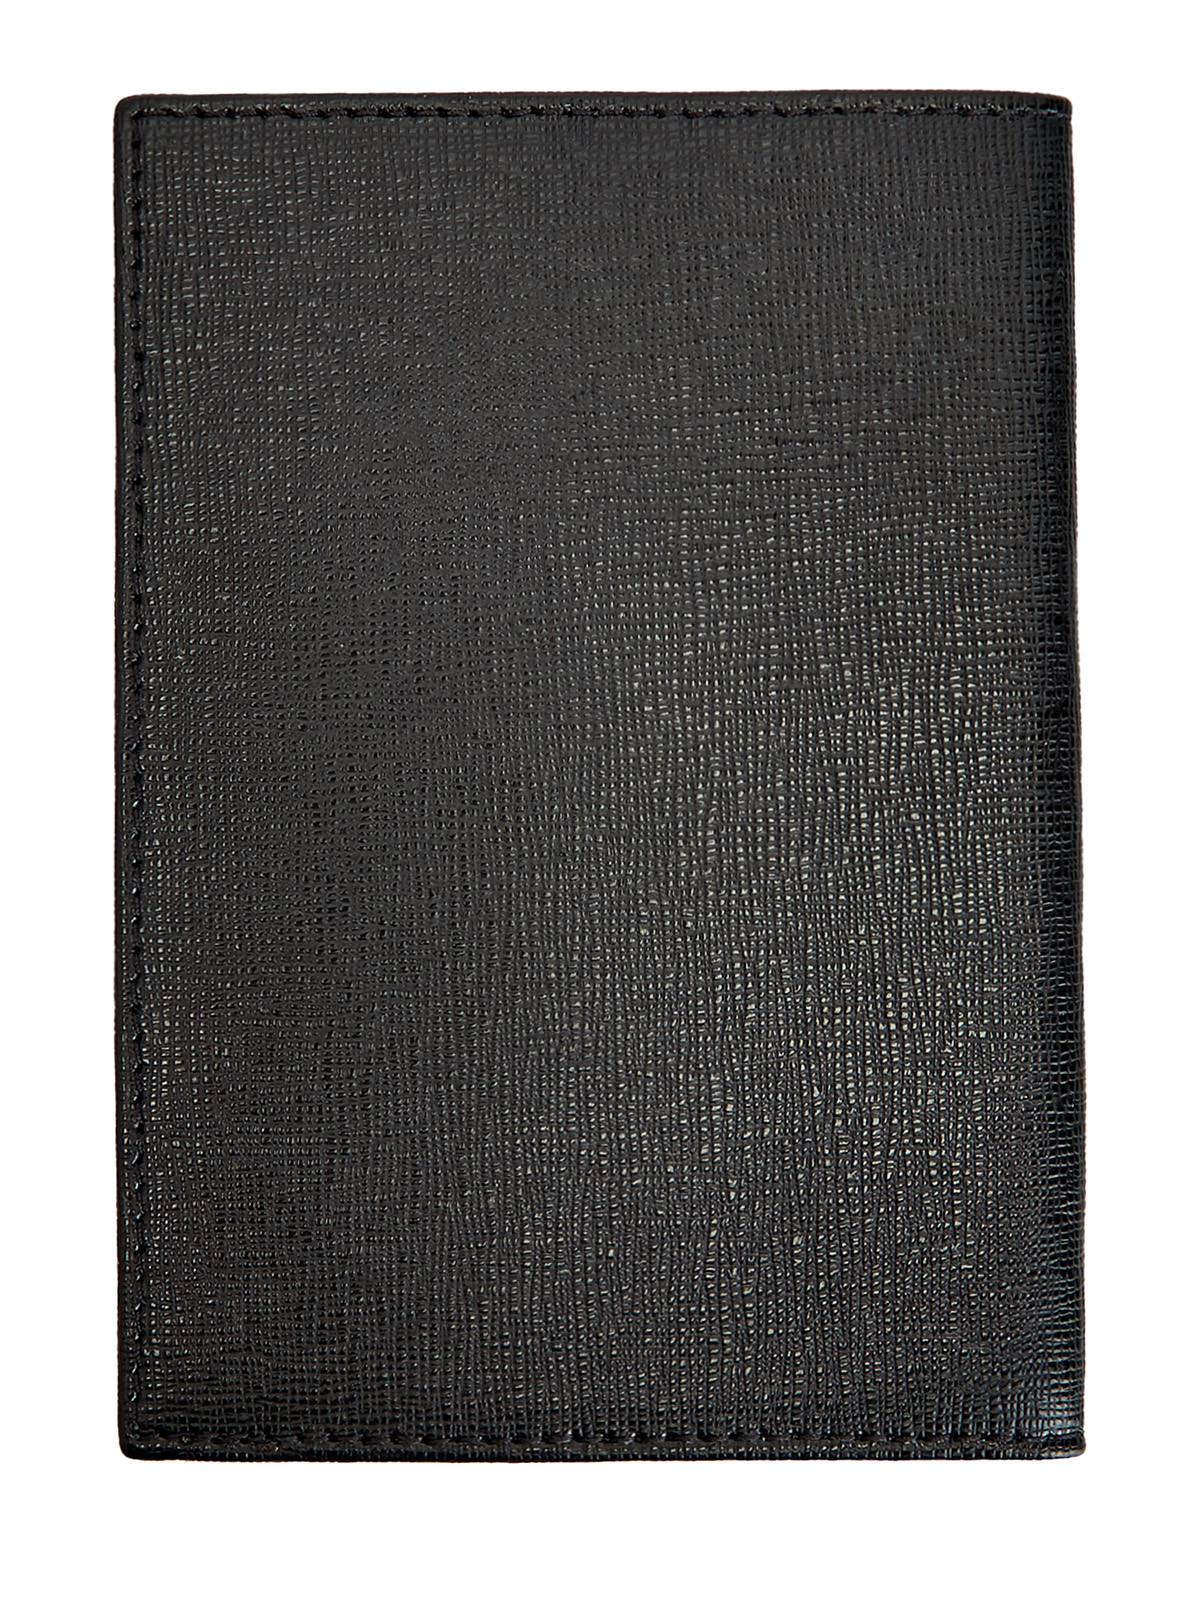 Обложка для паспорта из кожи с сафьяновой отделкой MORESCHI, цвет черный, размер M;L;XL - фото 2